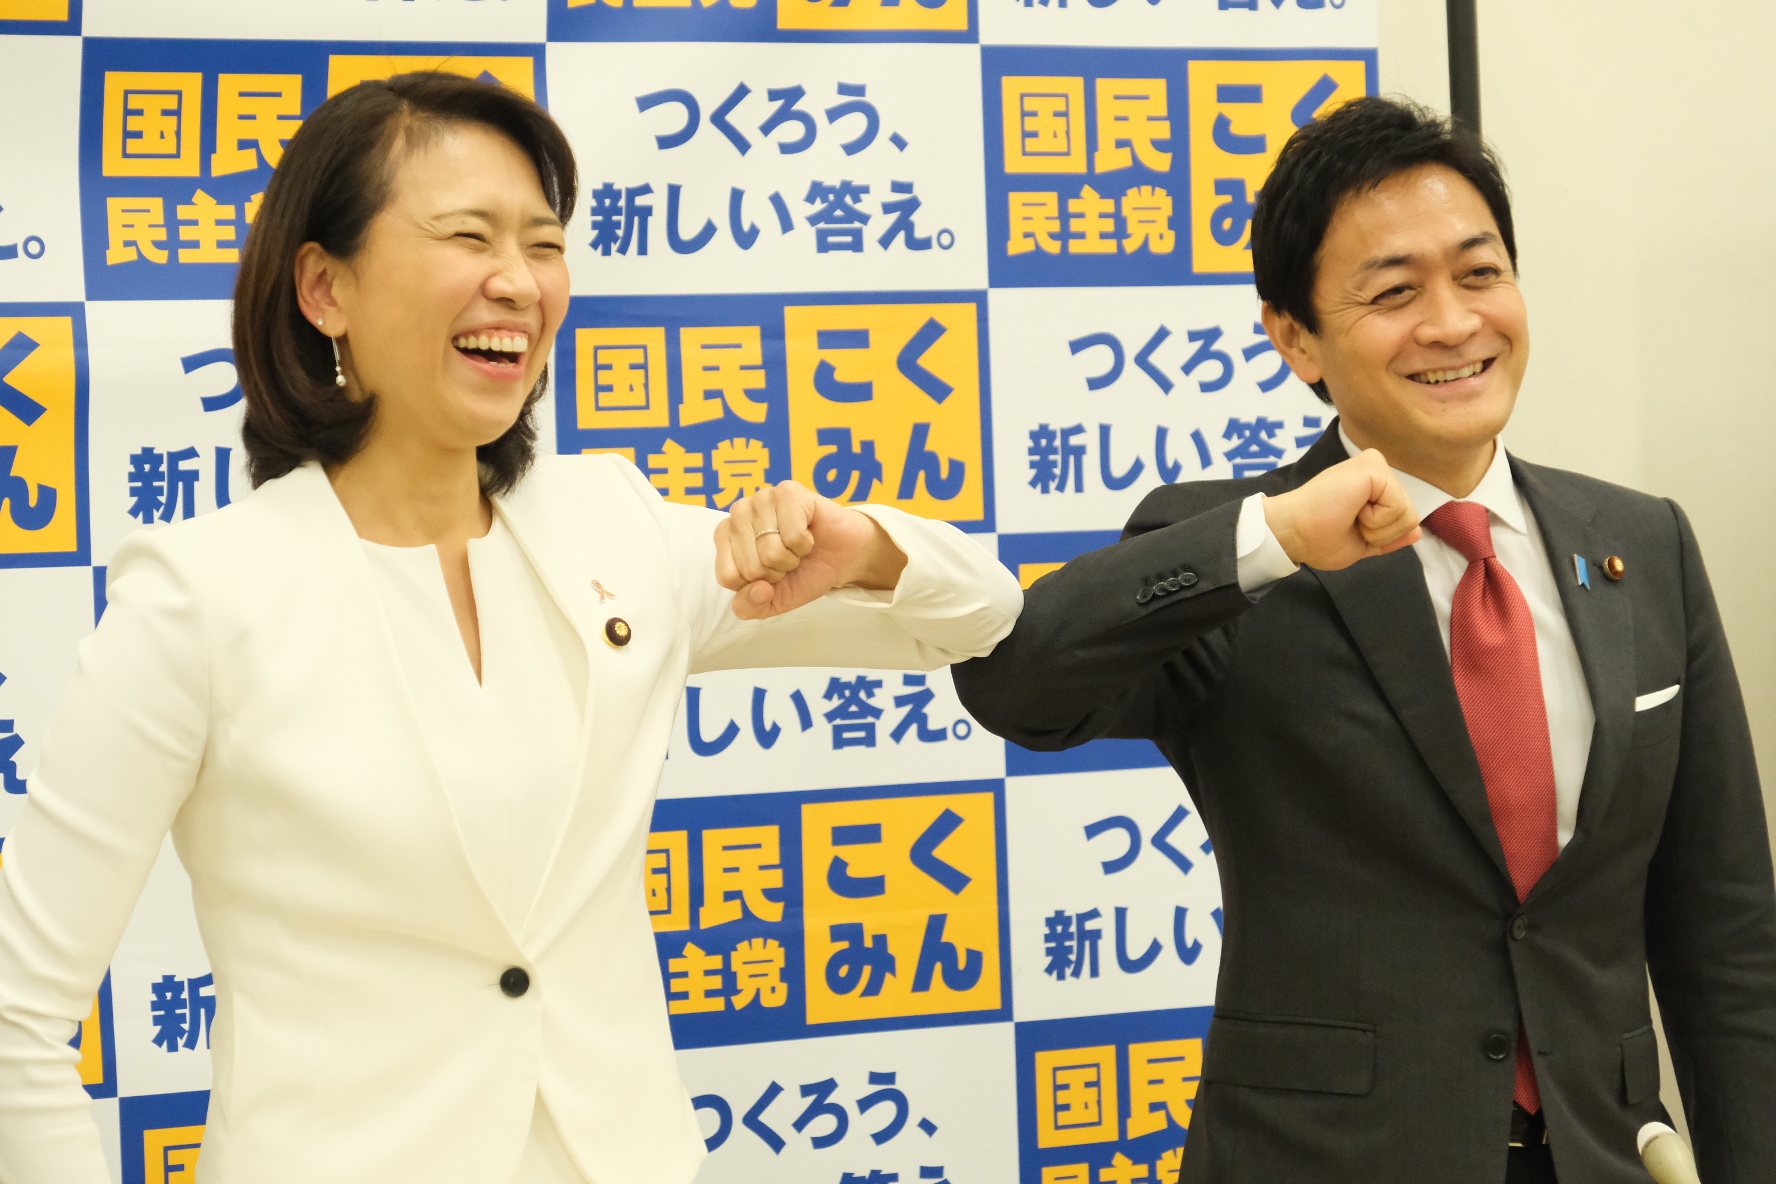 代表選挙にのぞむ伊藤孝恵候補と玉木雄一郎候補